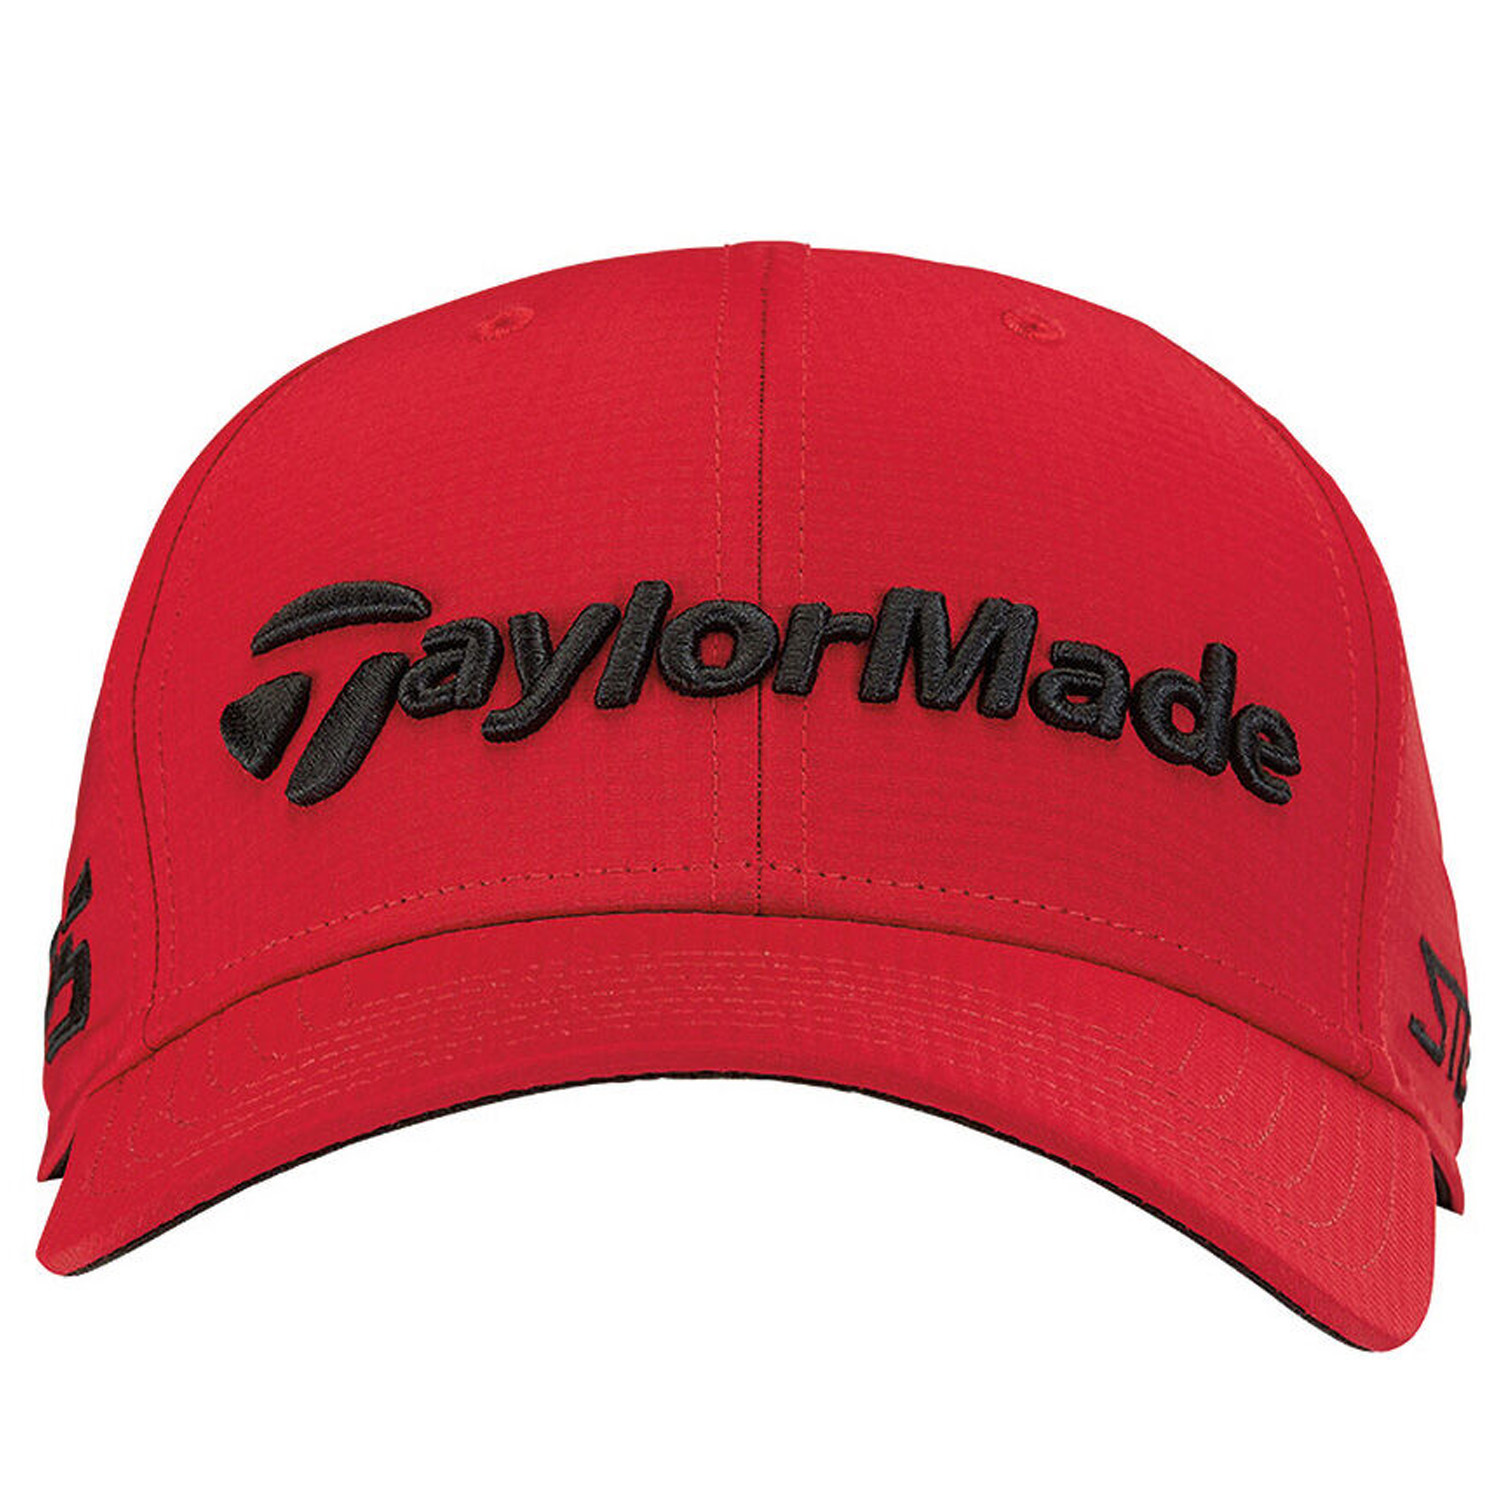 TaylorMade Tour Radar Adjustable Baseball Cap